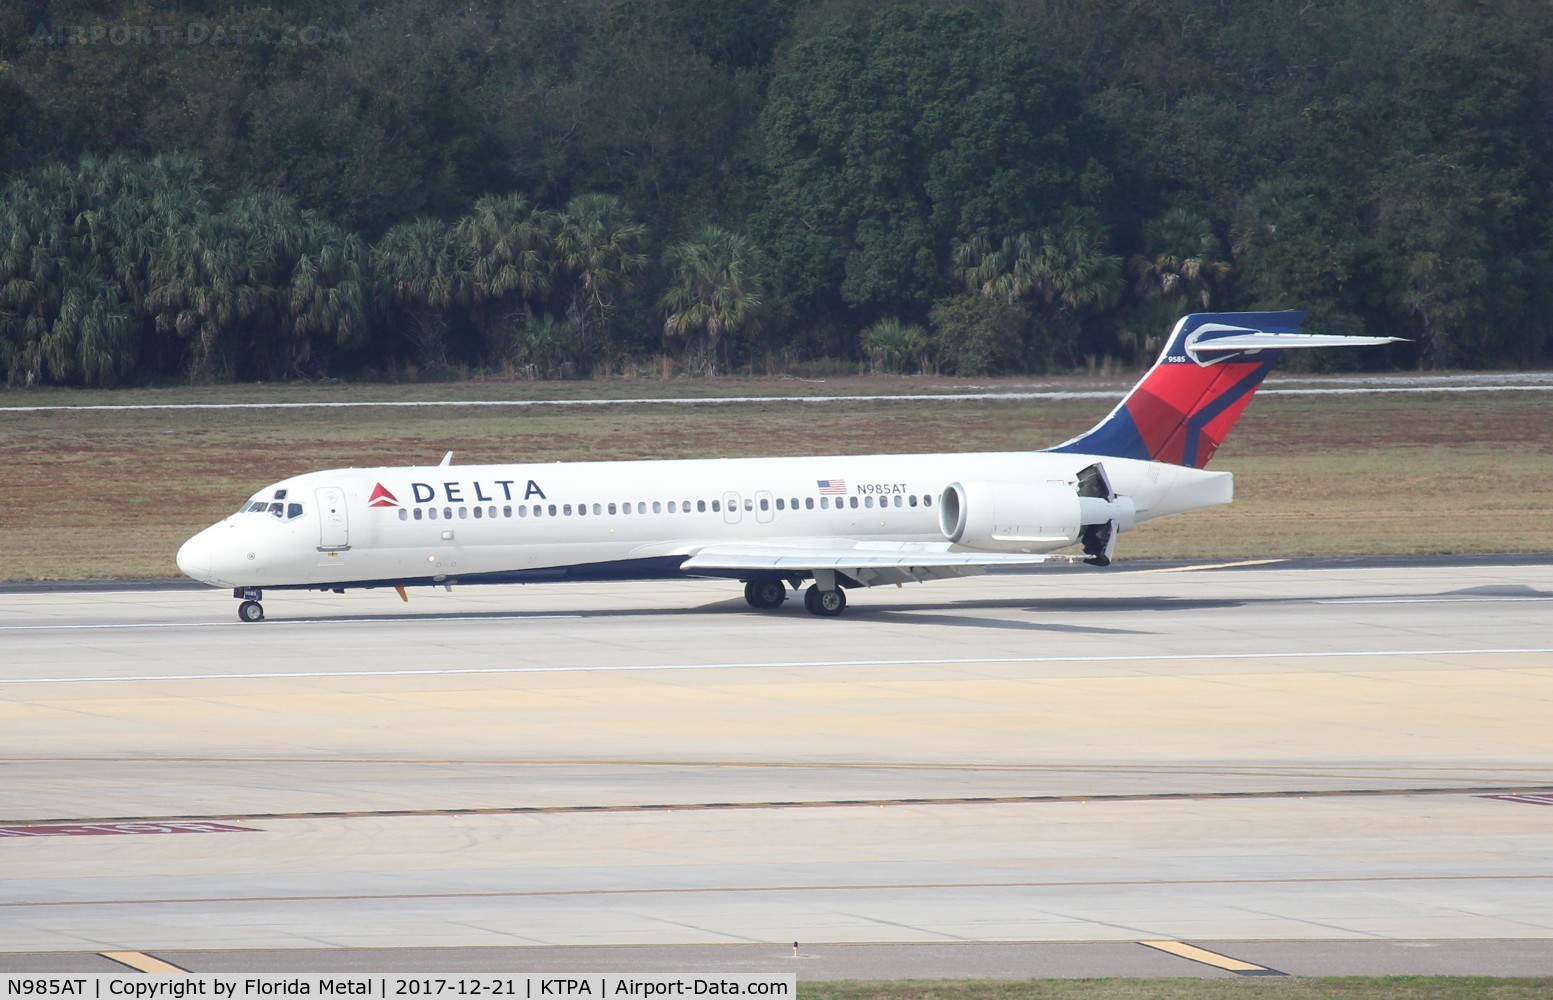 N985AT, 2001 Boeing 717-200 C/N 55090, Delta